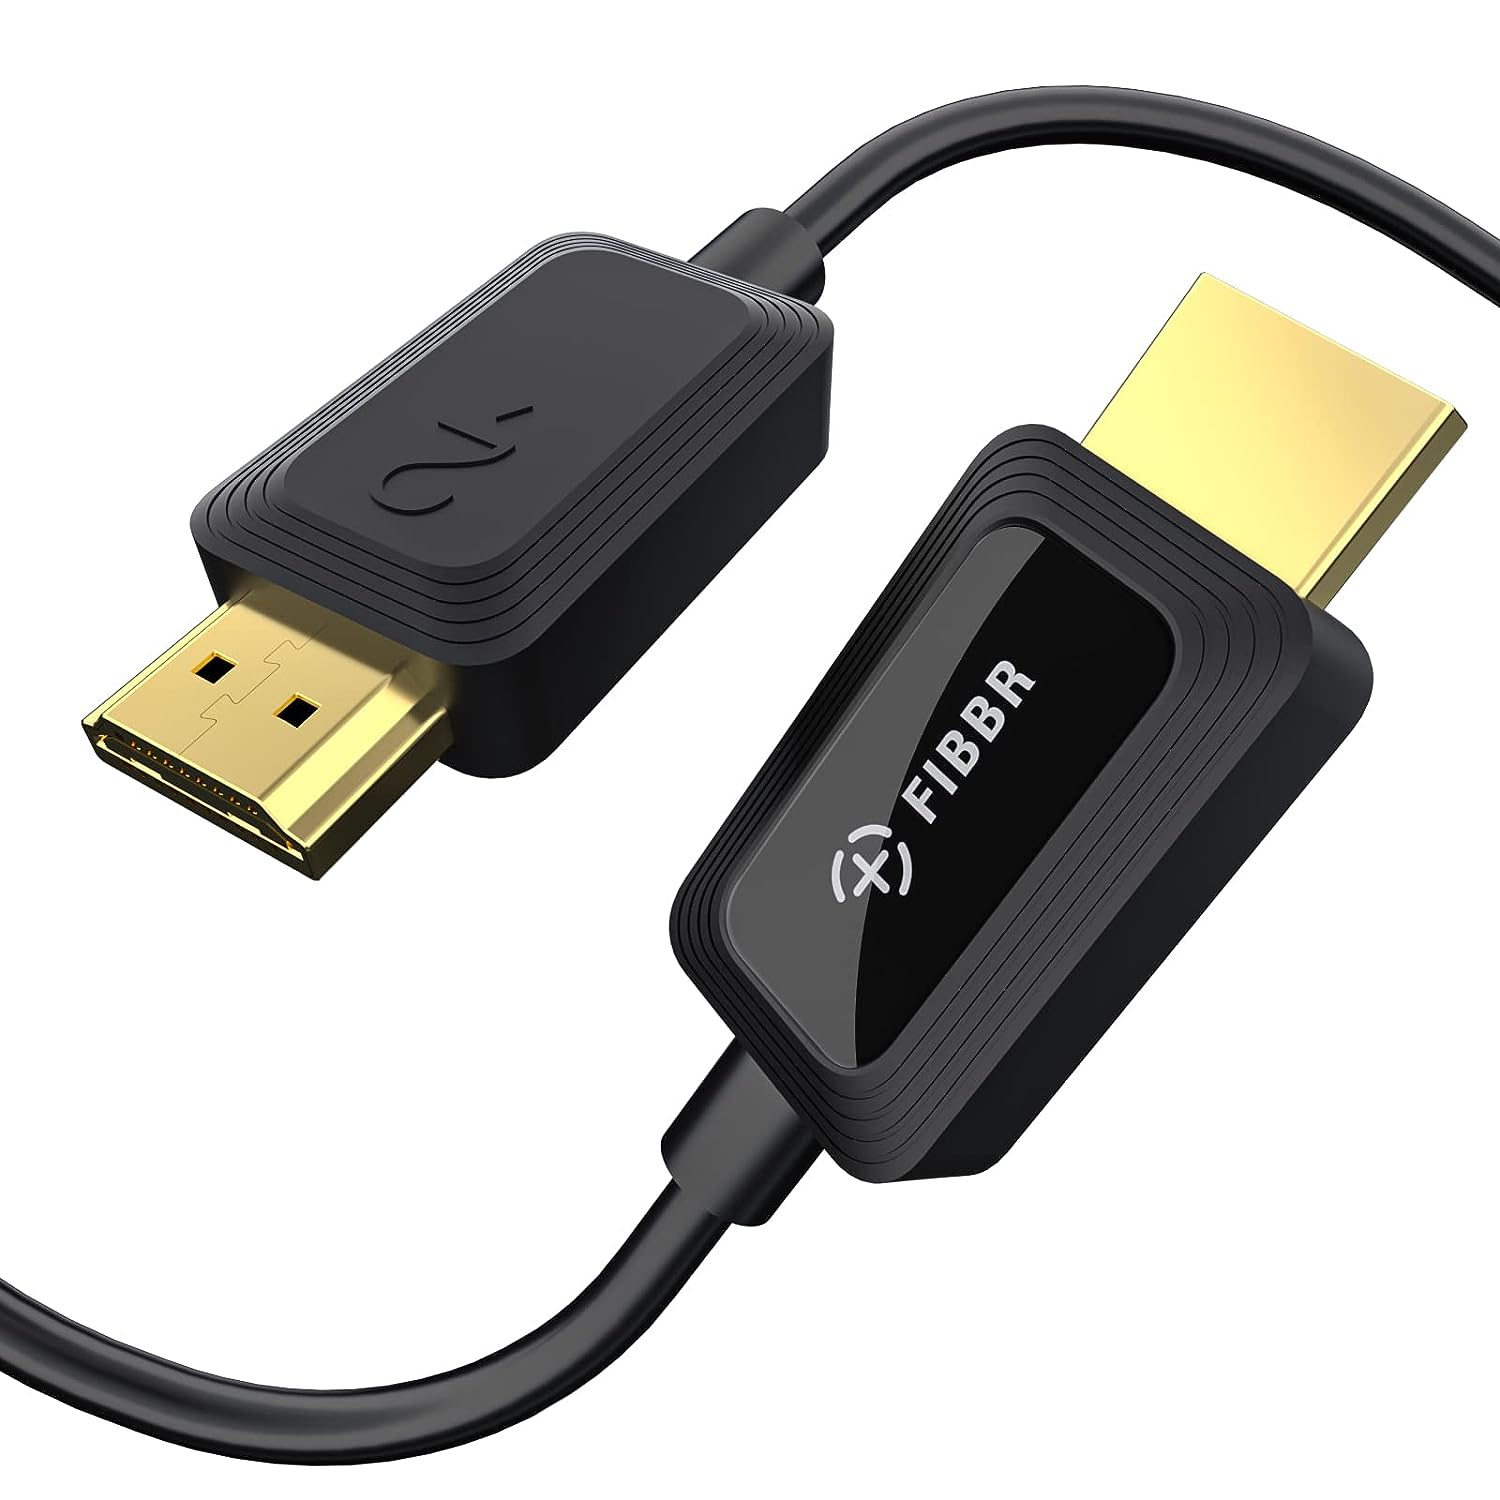 HDMI 2.1 - HDMI Cables - Cables - Cables - Cables & Adapters - LevelOne